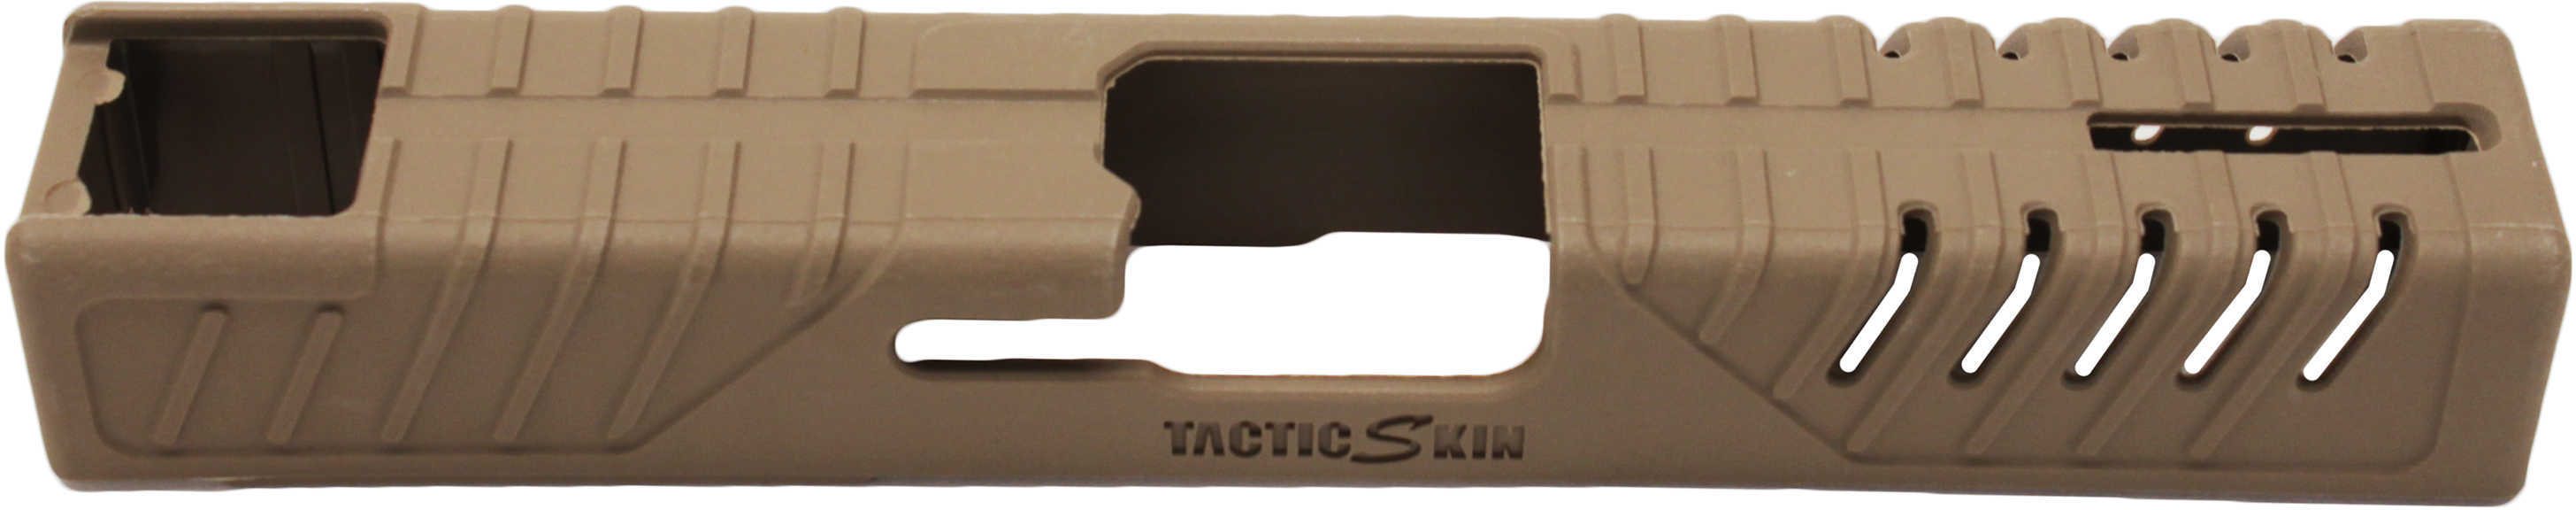 Mako Group Snap-On Skins for Glock 19 Slides Tan Md: TACTISKIN-19-T